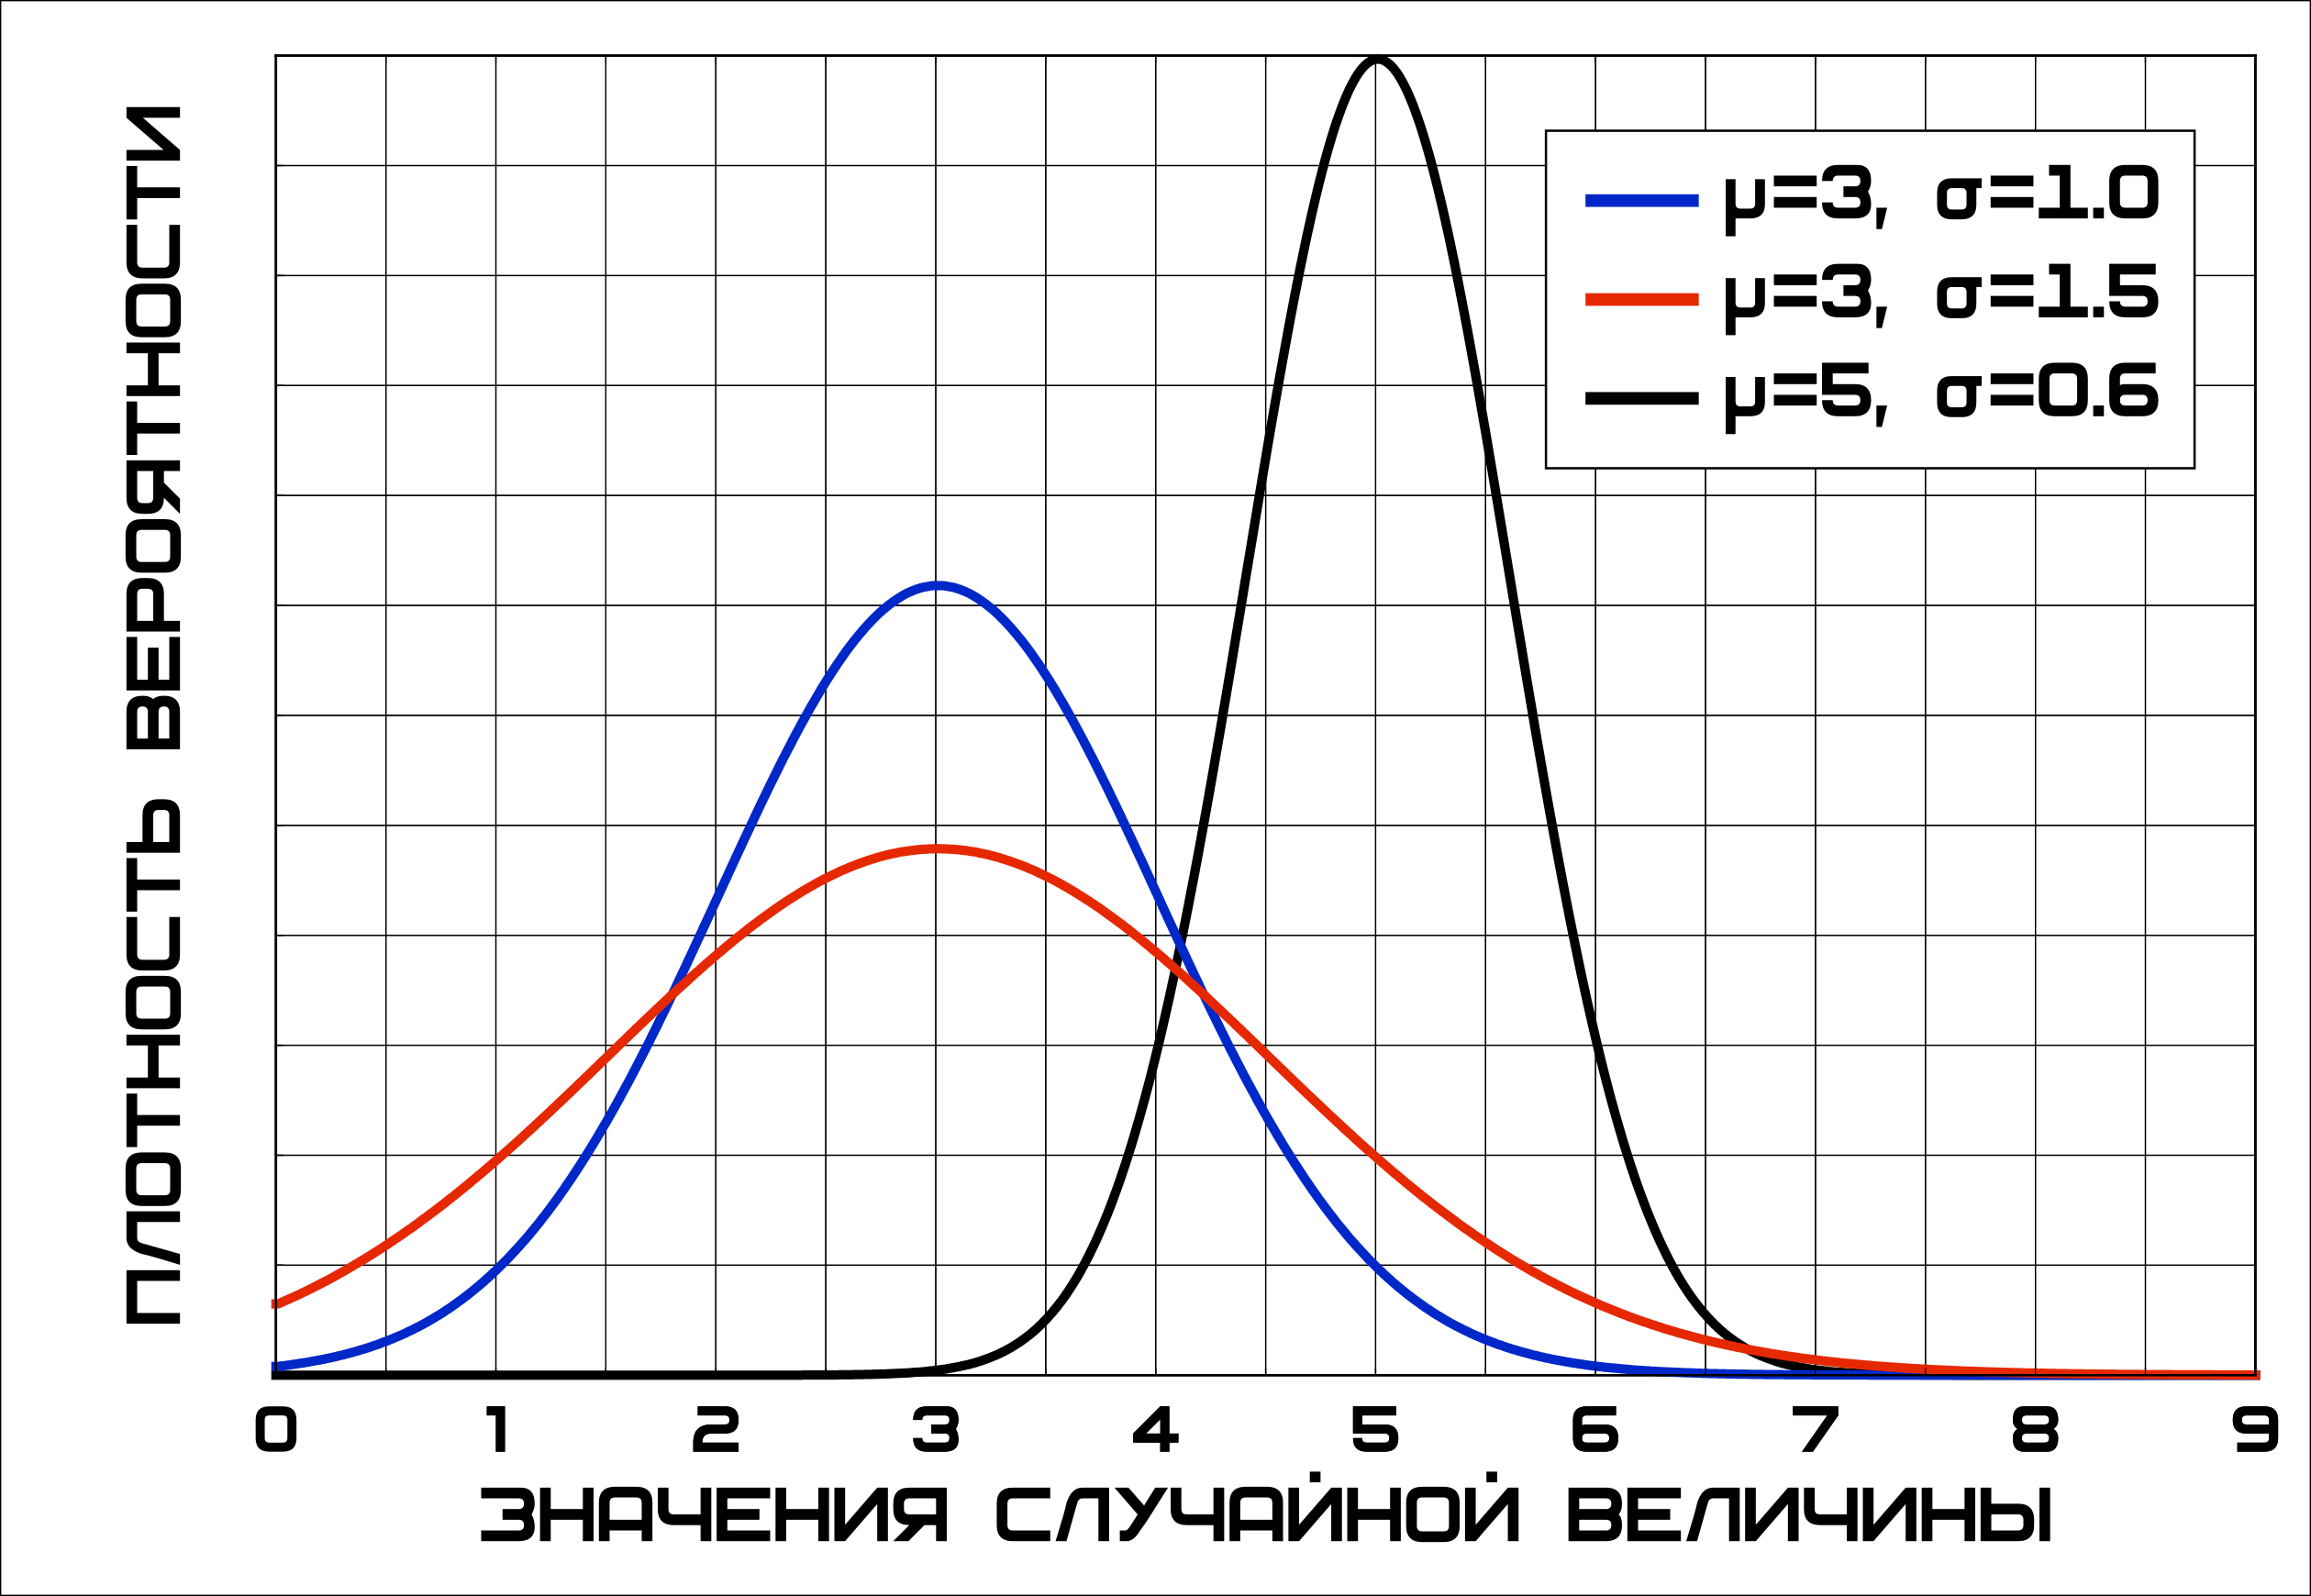 Нормальные распределения с различным математическим ожиданием μ и различным стандартным отклонением σ